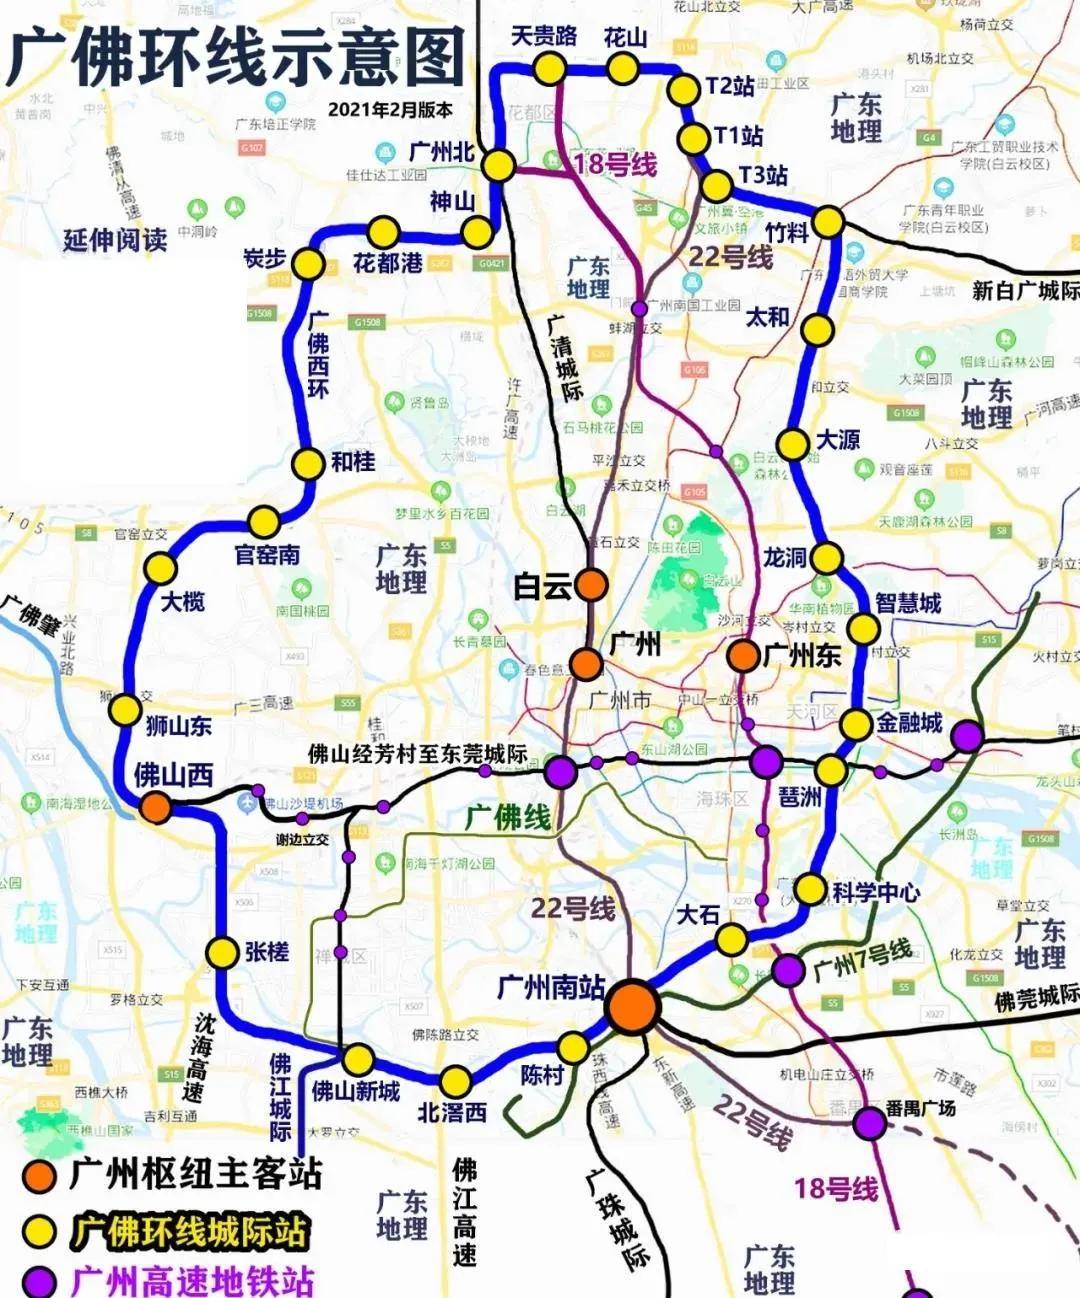 值得一提的是,广佛东环线广州南站至白云机场段全长约46.